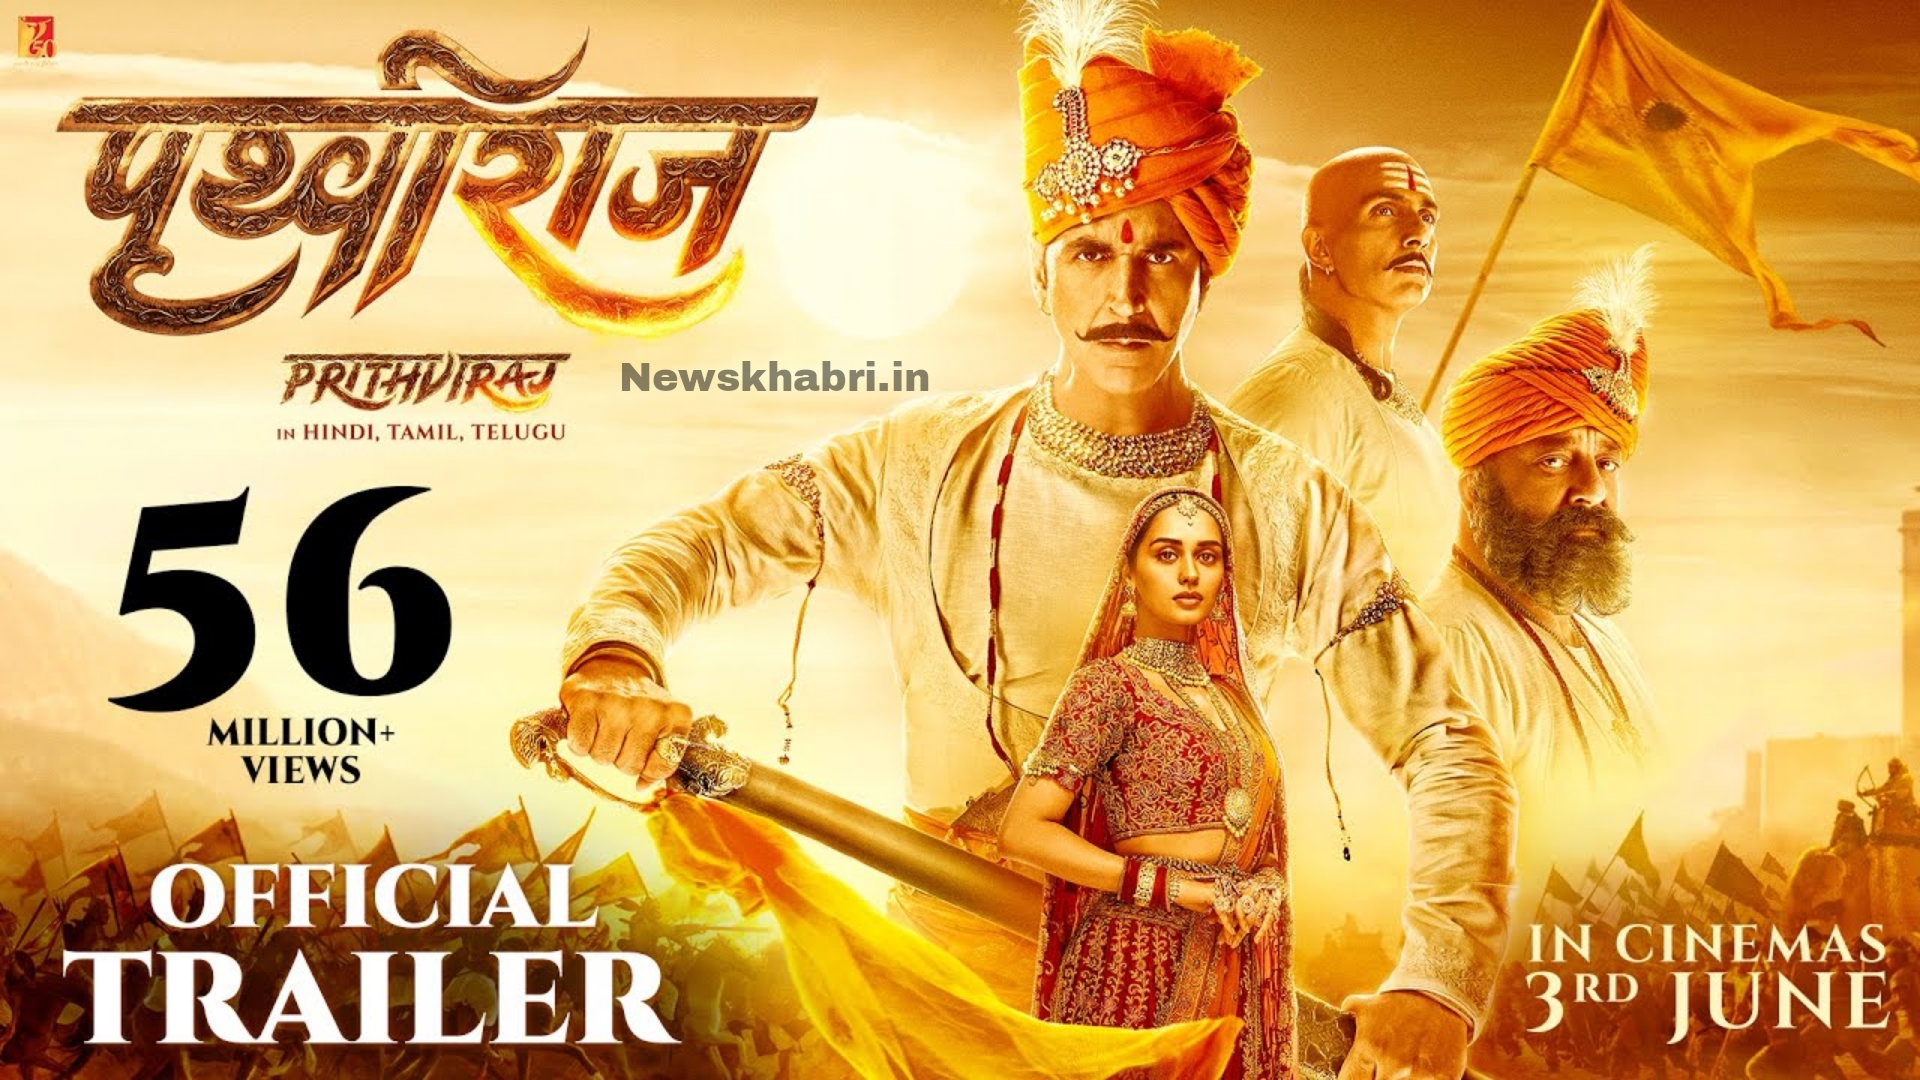 Prithviraj-Movie-Release-Date-Trailer-Cast-Budget-OTT-Platform-Watch-Online